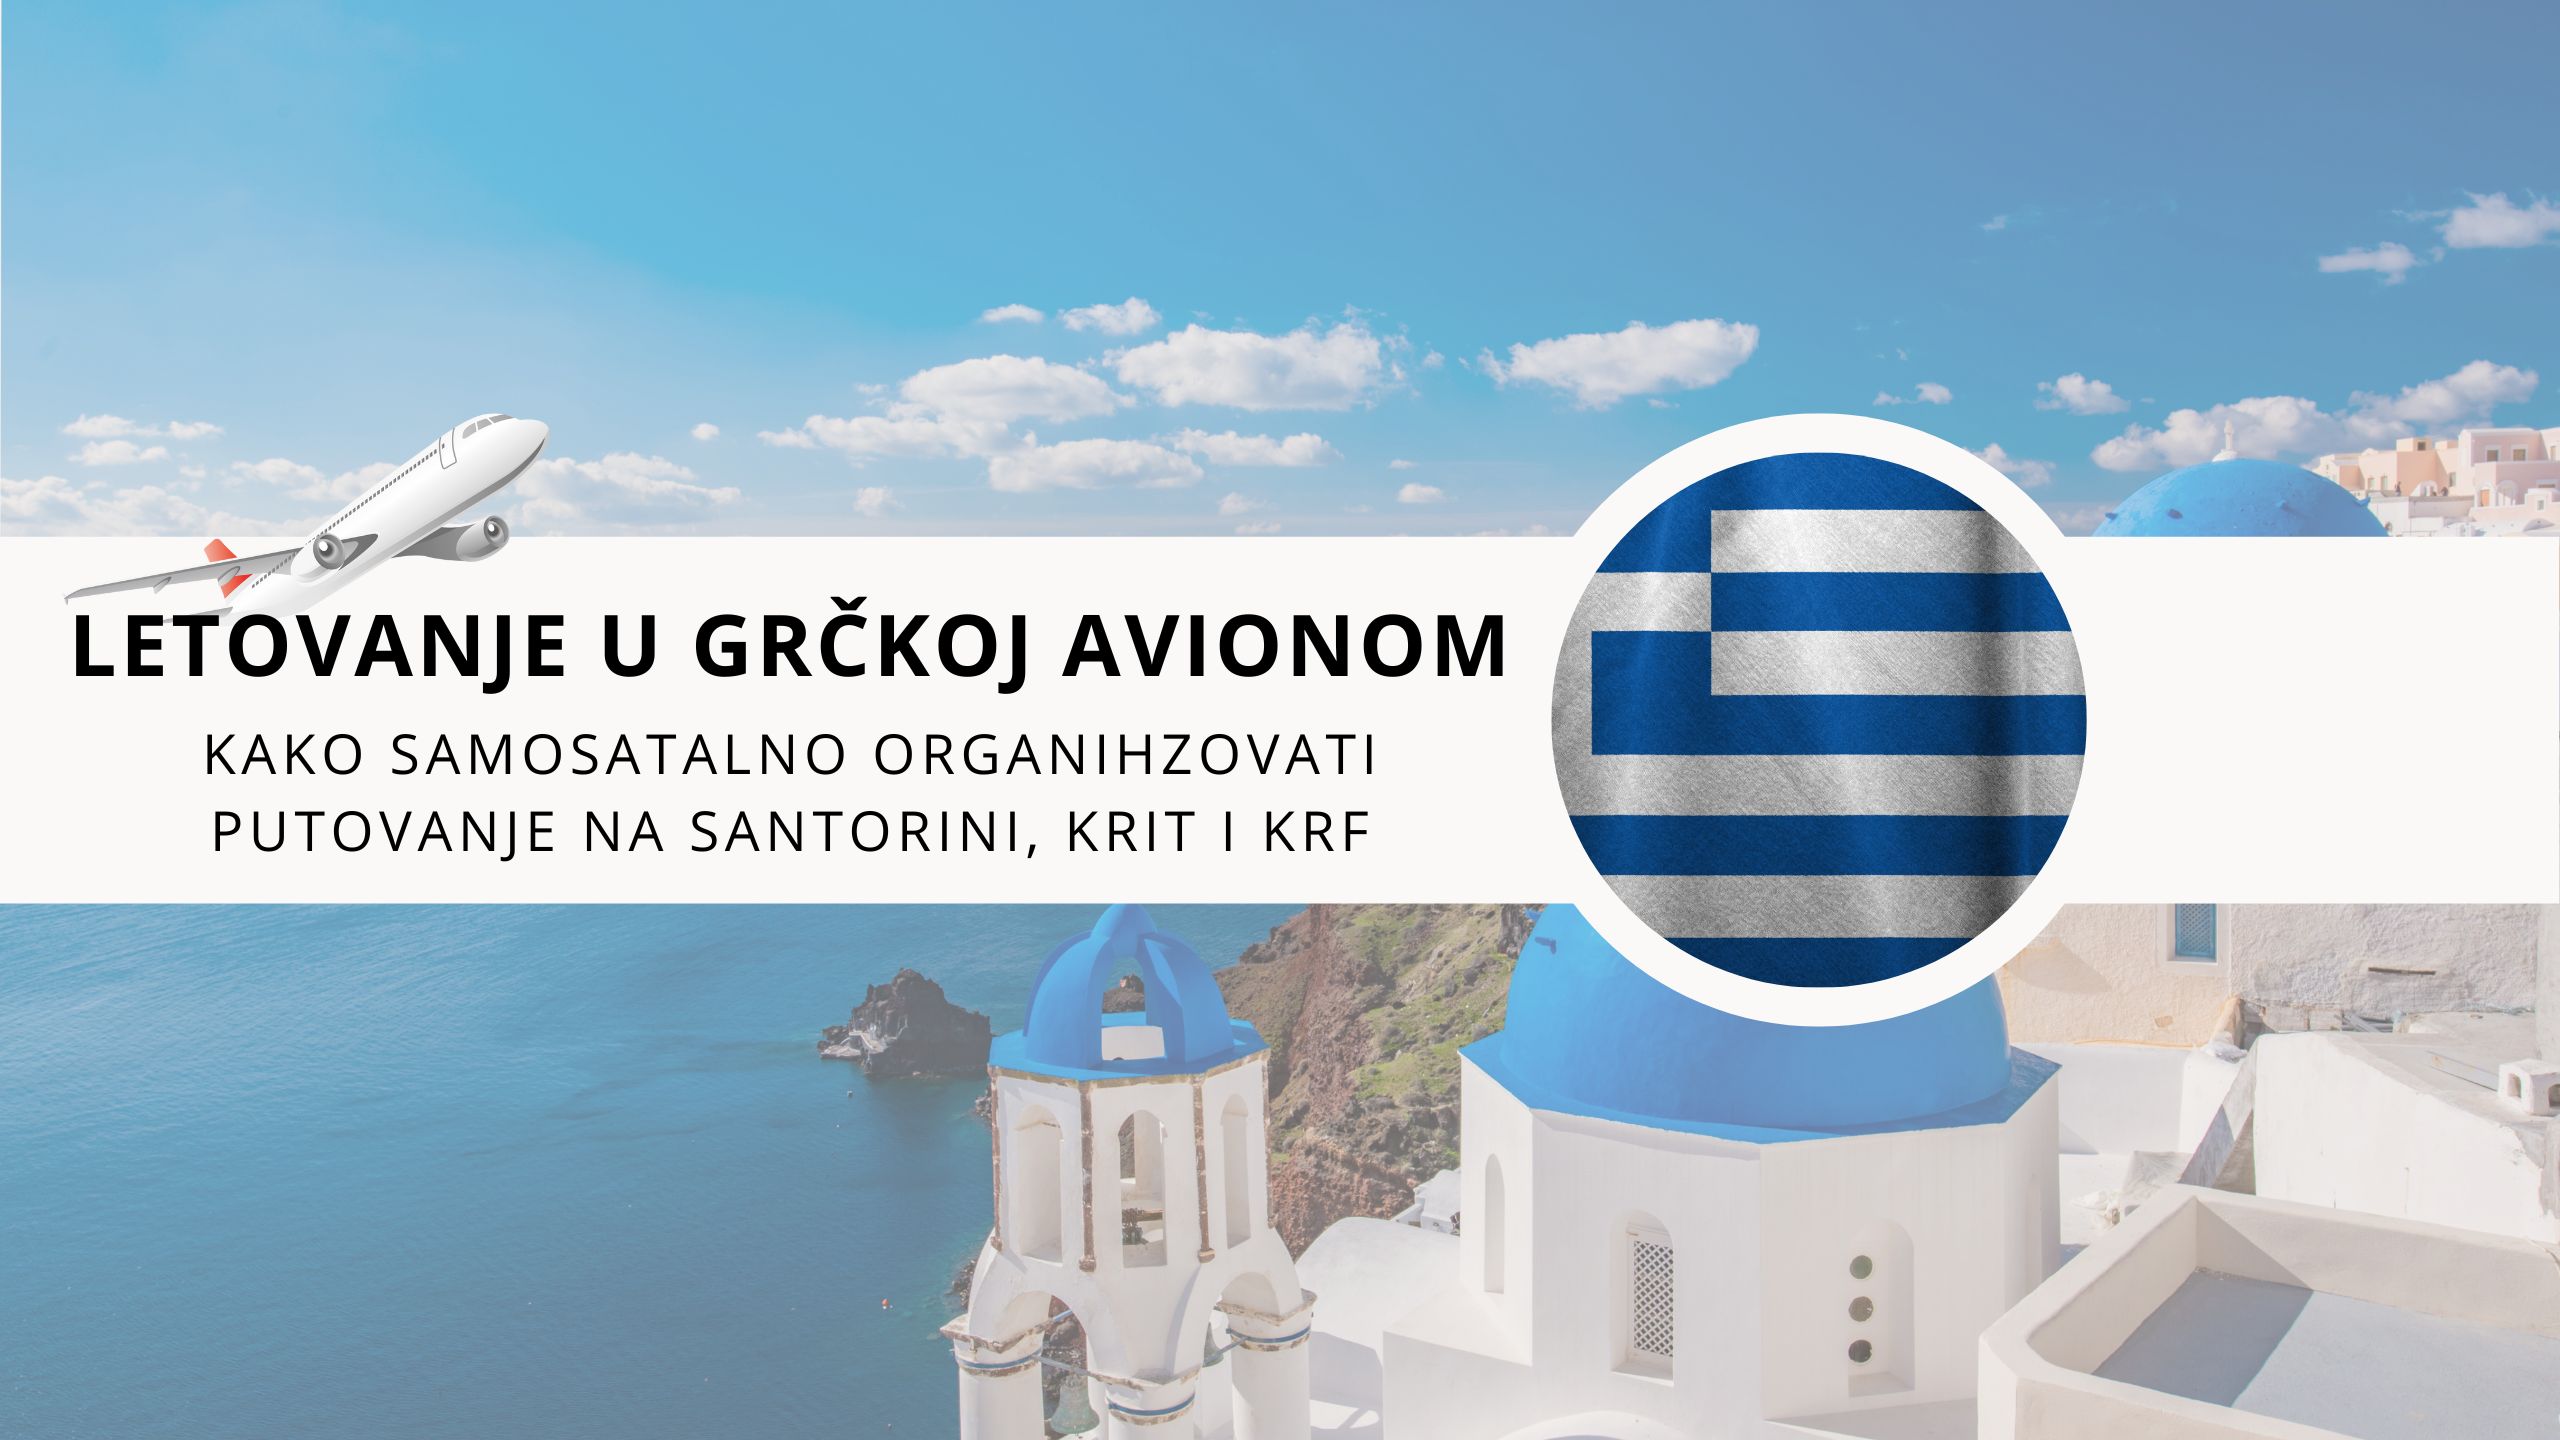 KAKO SAMOSTALNO ORGANIZOVATI PUTOVANJE U GRČKU AVIONOM